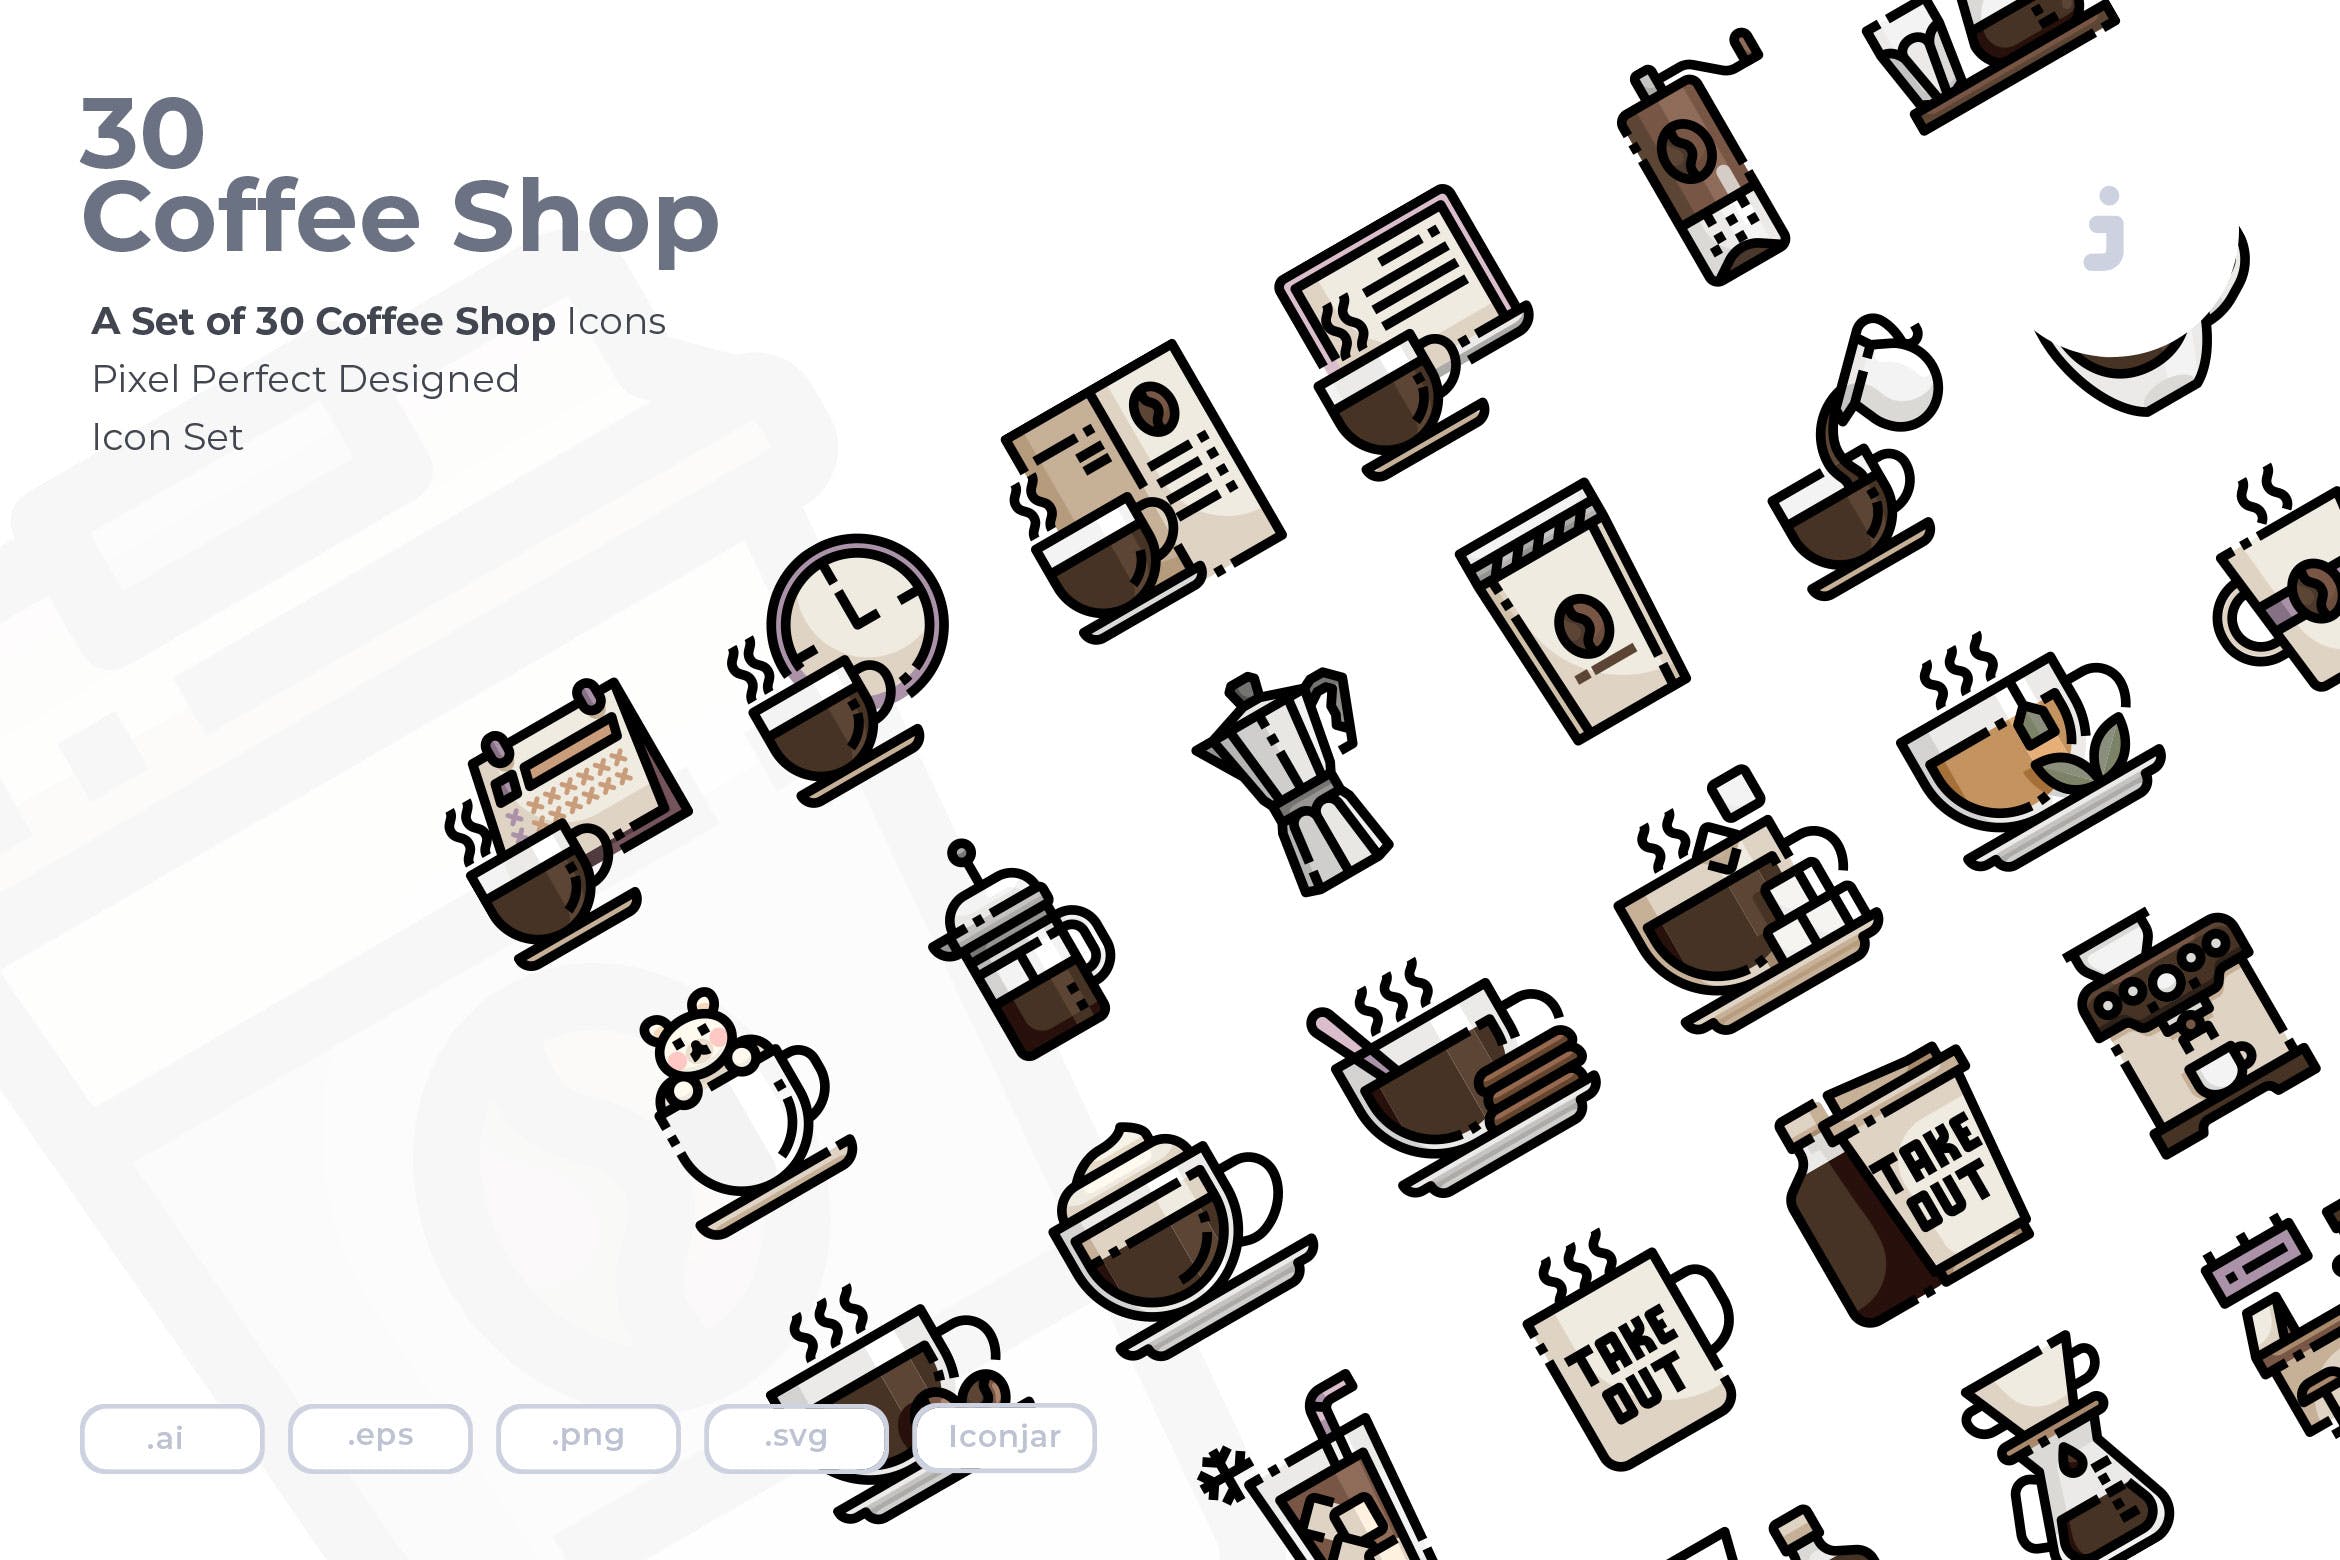 30枚咖啡/咖啡店矢量素材库精选图标素材 30 Coffee Shop Icons插图